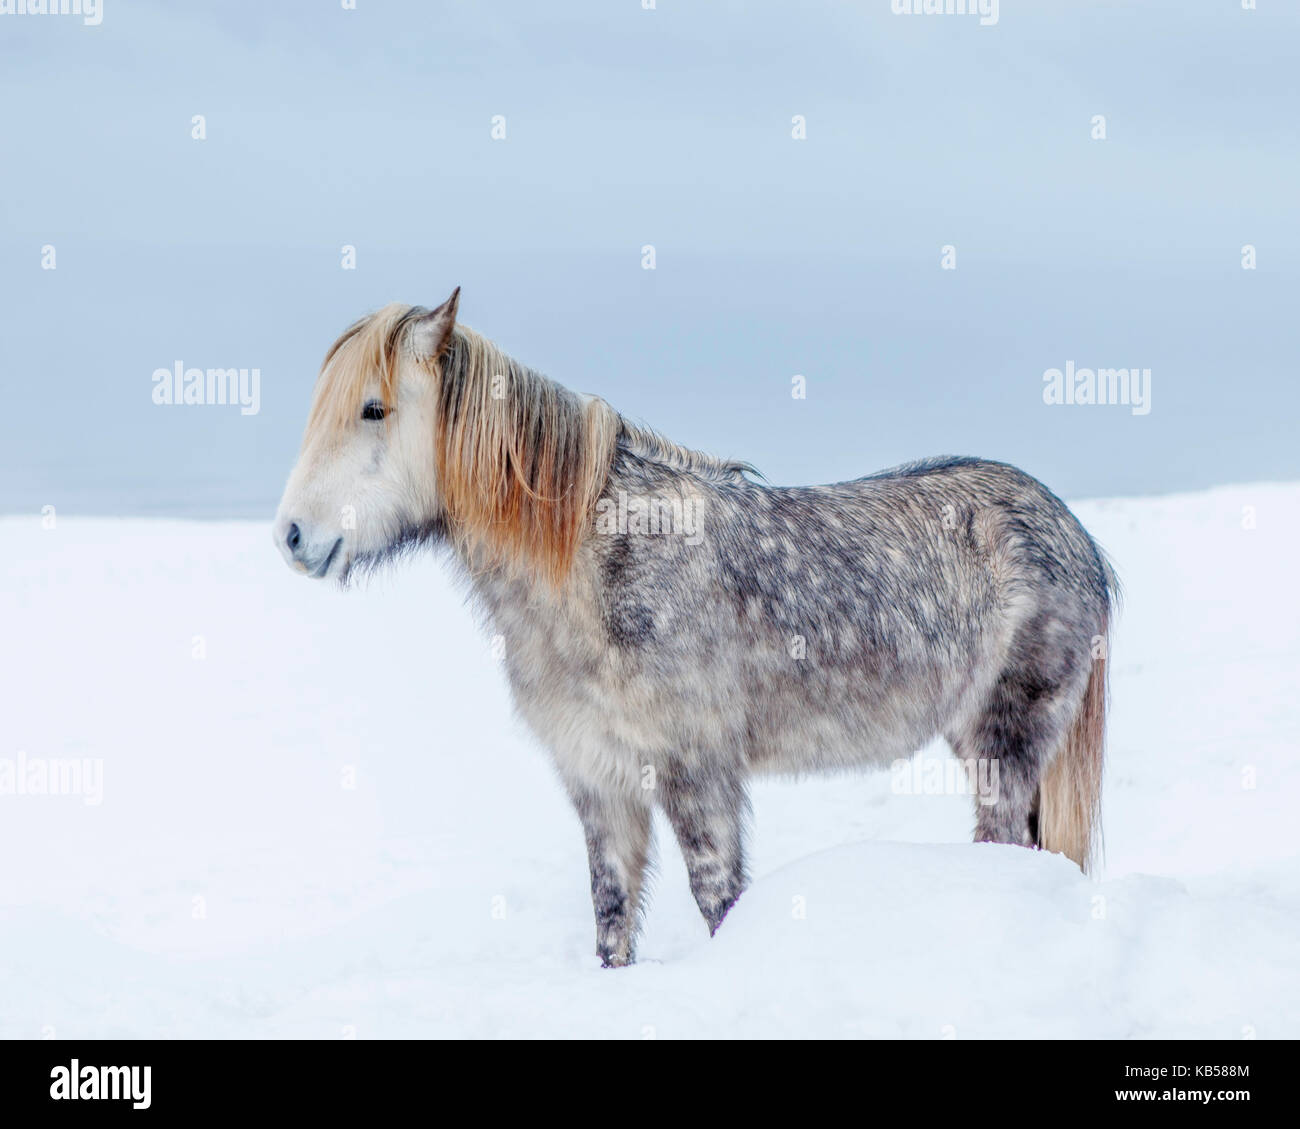 Ritratto Cavallo islandese, Islanda il cavallo islandese è una razza sviluppata in Islanda con molte qualità uniche. Sono di lunga durata e difficili e nel loro paese natale hanno poche malattie; la legge islandese impedisce l'importazione di cavalli nel paese e gli animali esportati non possono tornare. Foto Stock